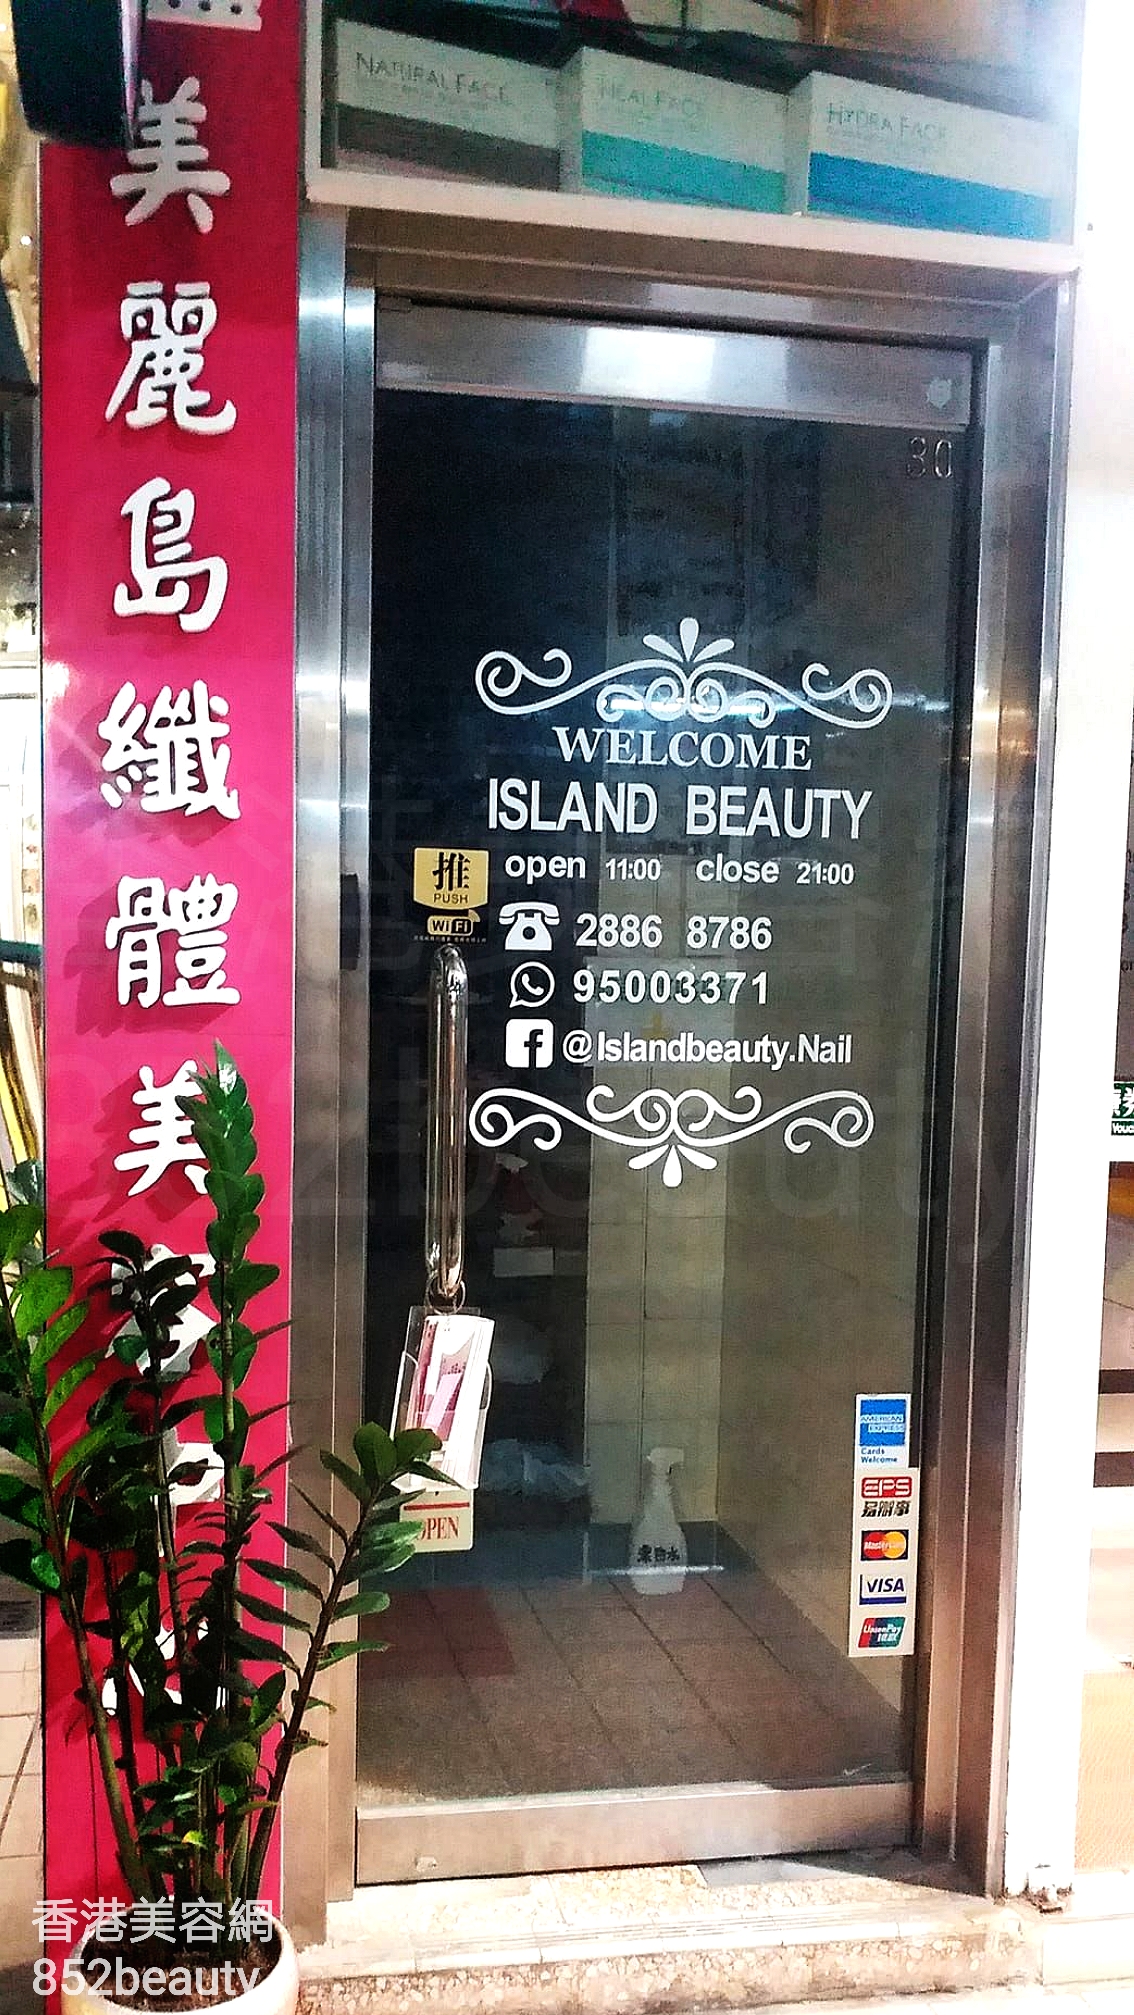 美容院: Island Beauty 美麗鳥纖體美容中心